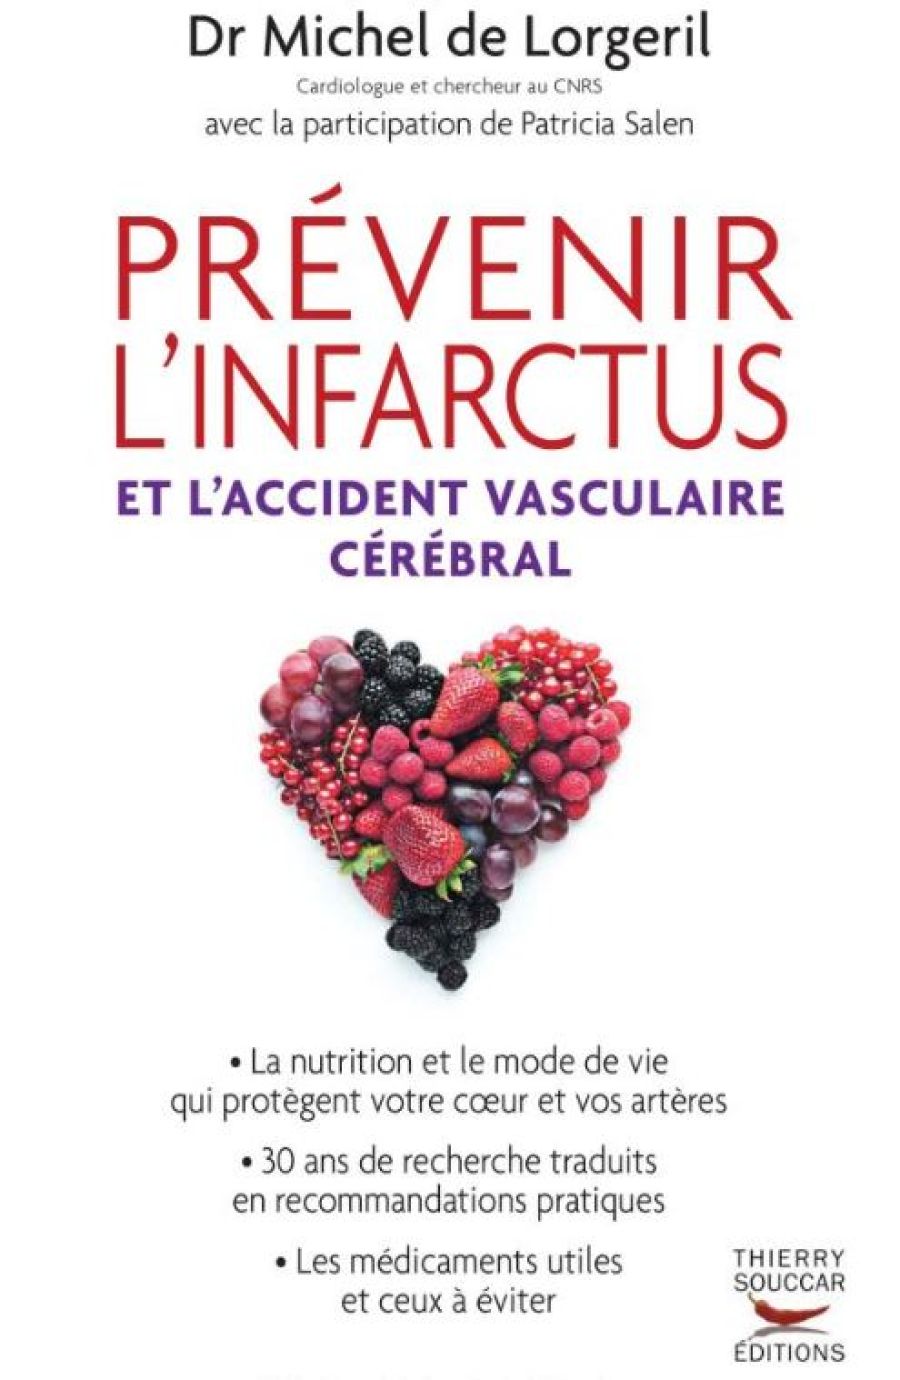 Couverture du livre « Prévenir l’infarctus » écrit par le Dr Michel de Lorgeril.